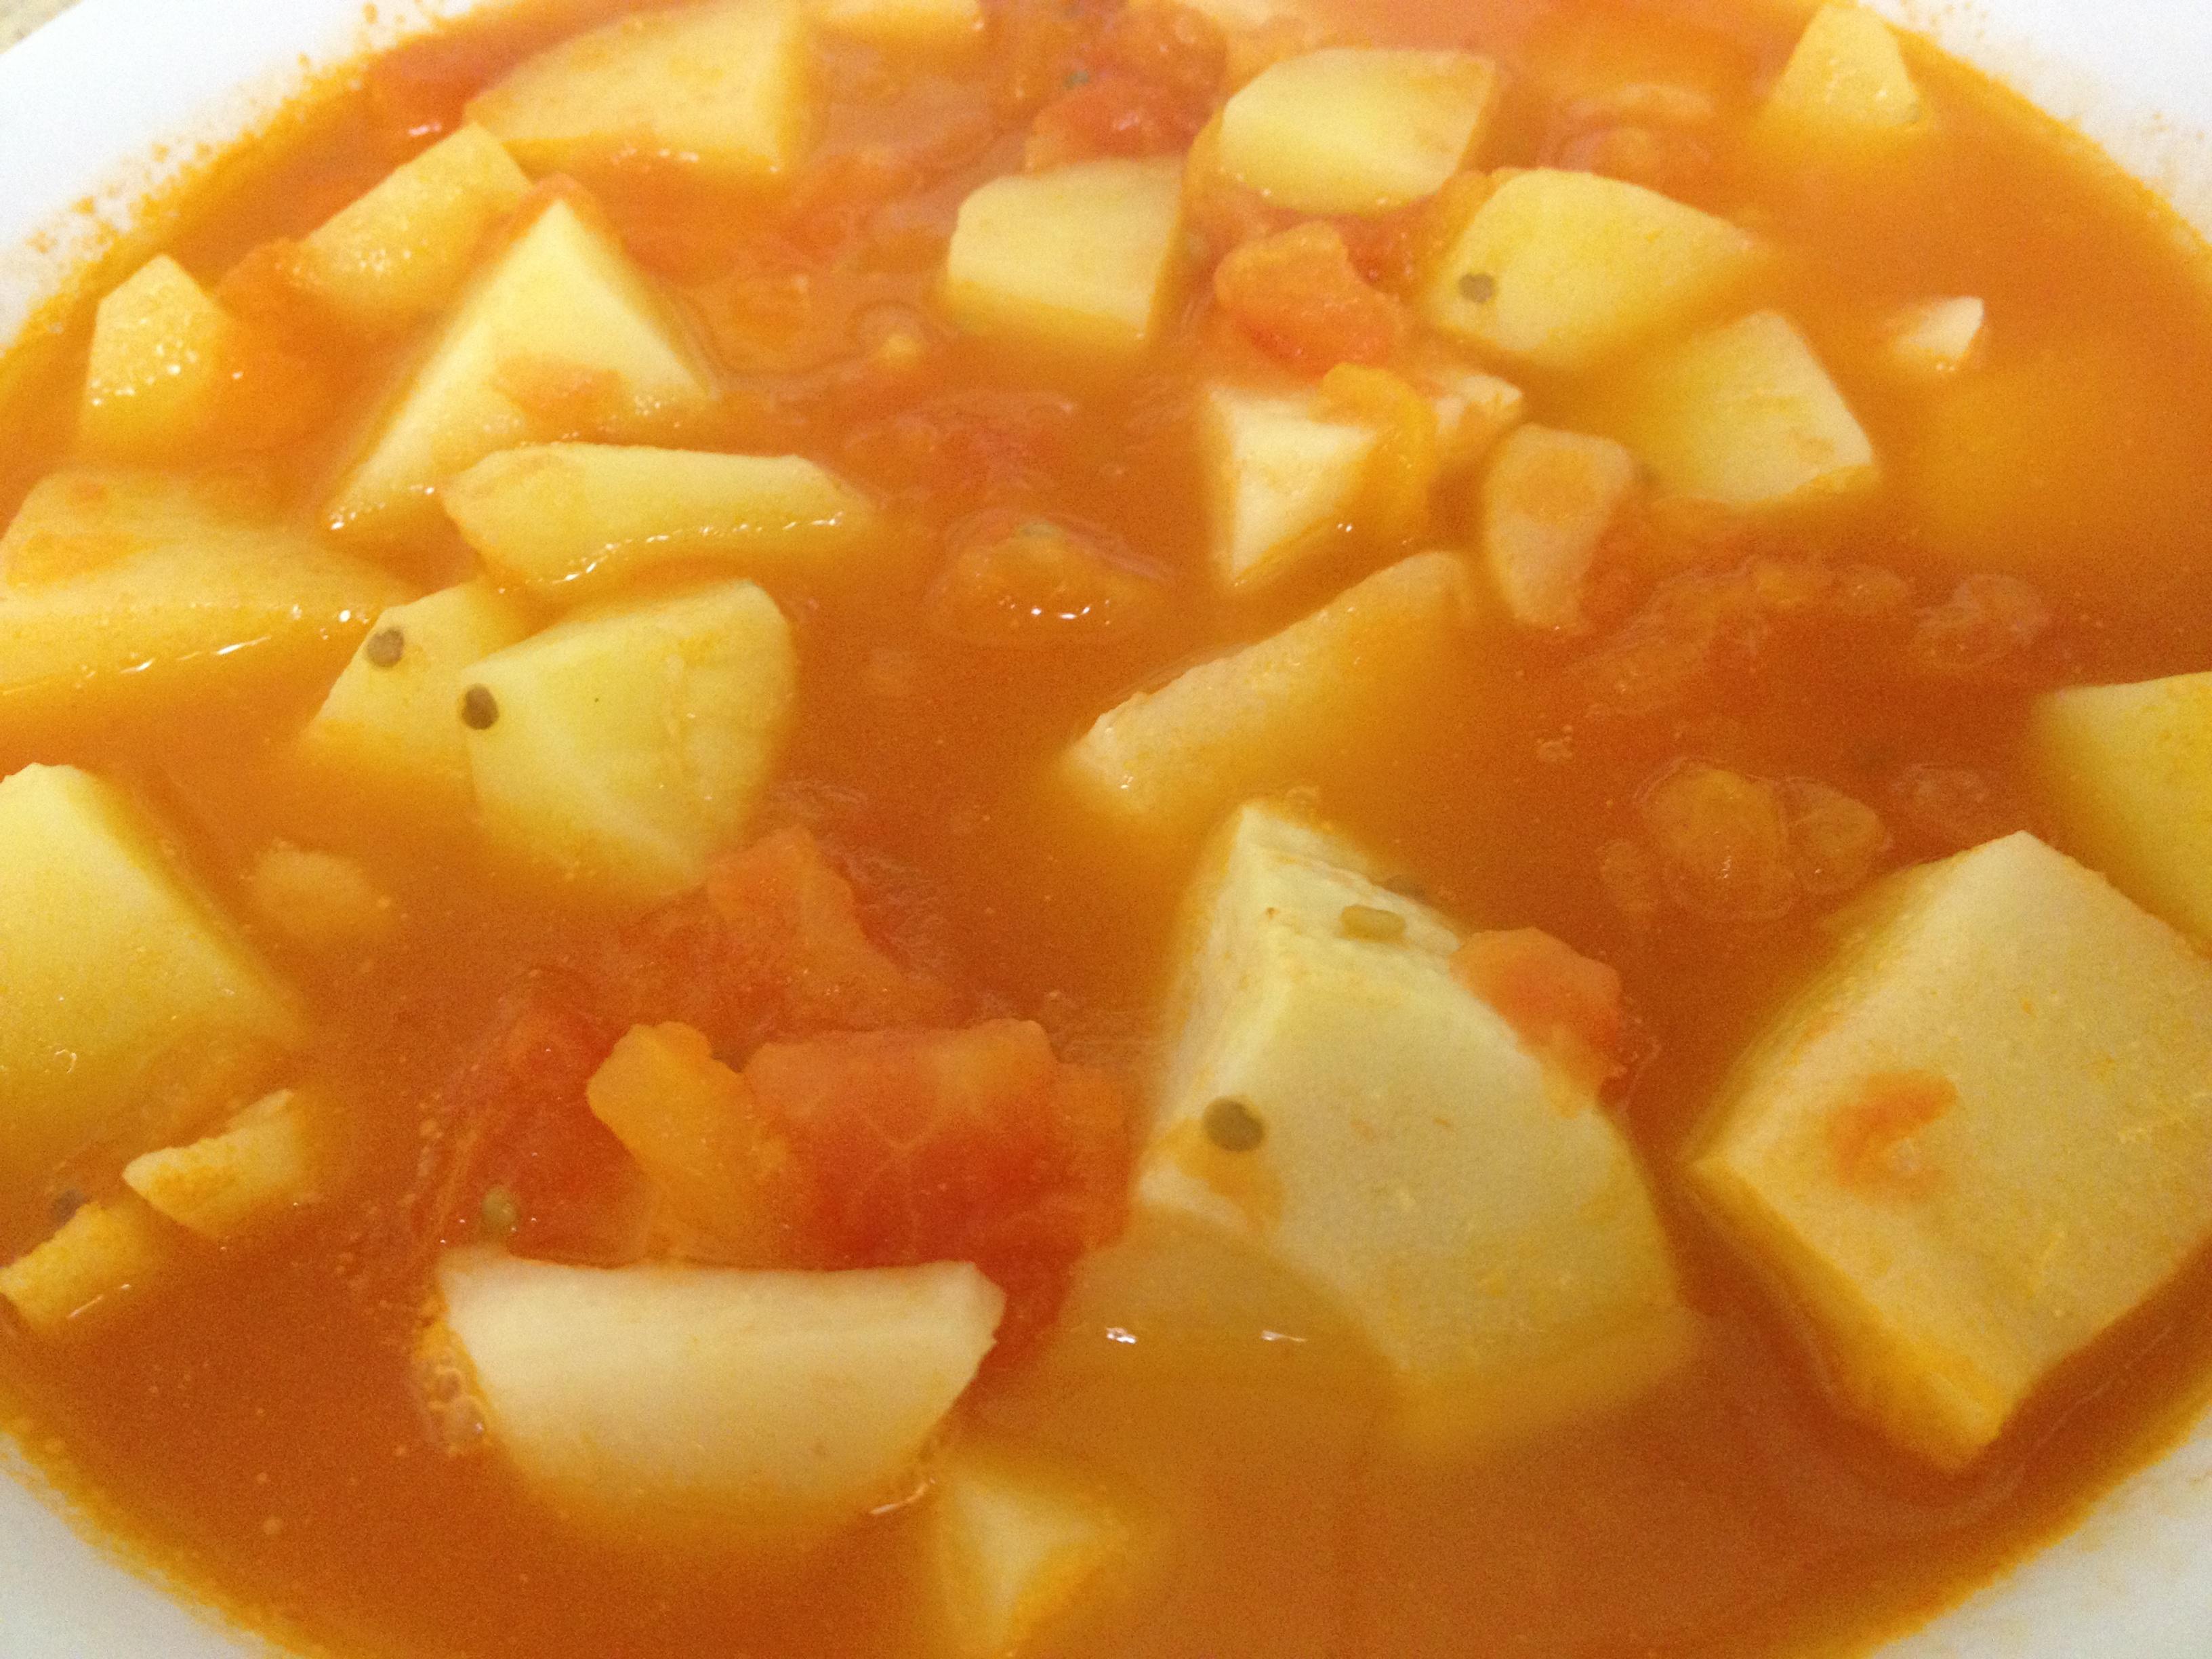 西红柿土豆咸笋汤的做法